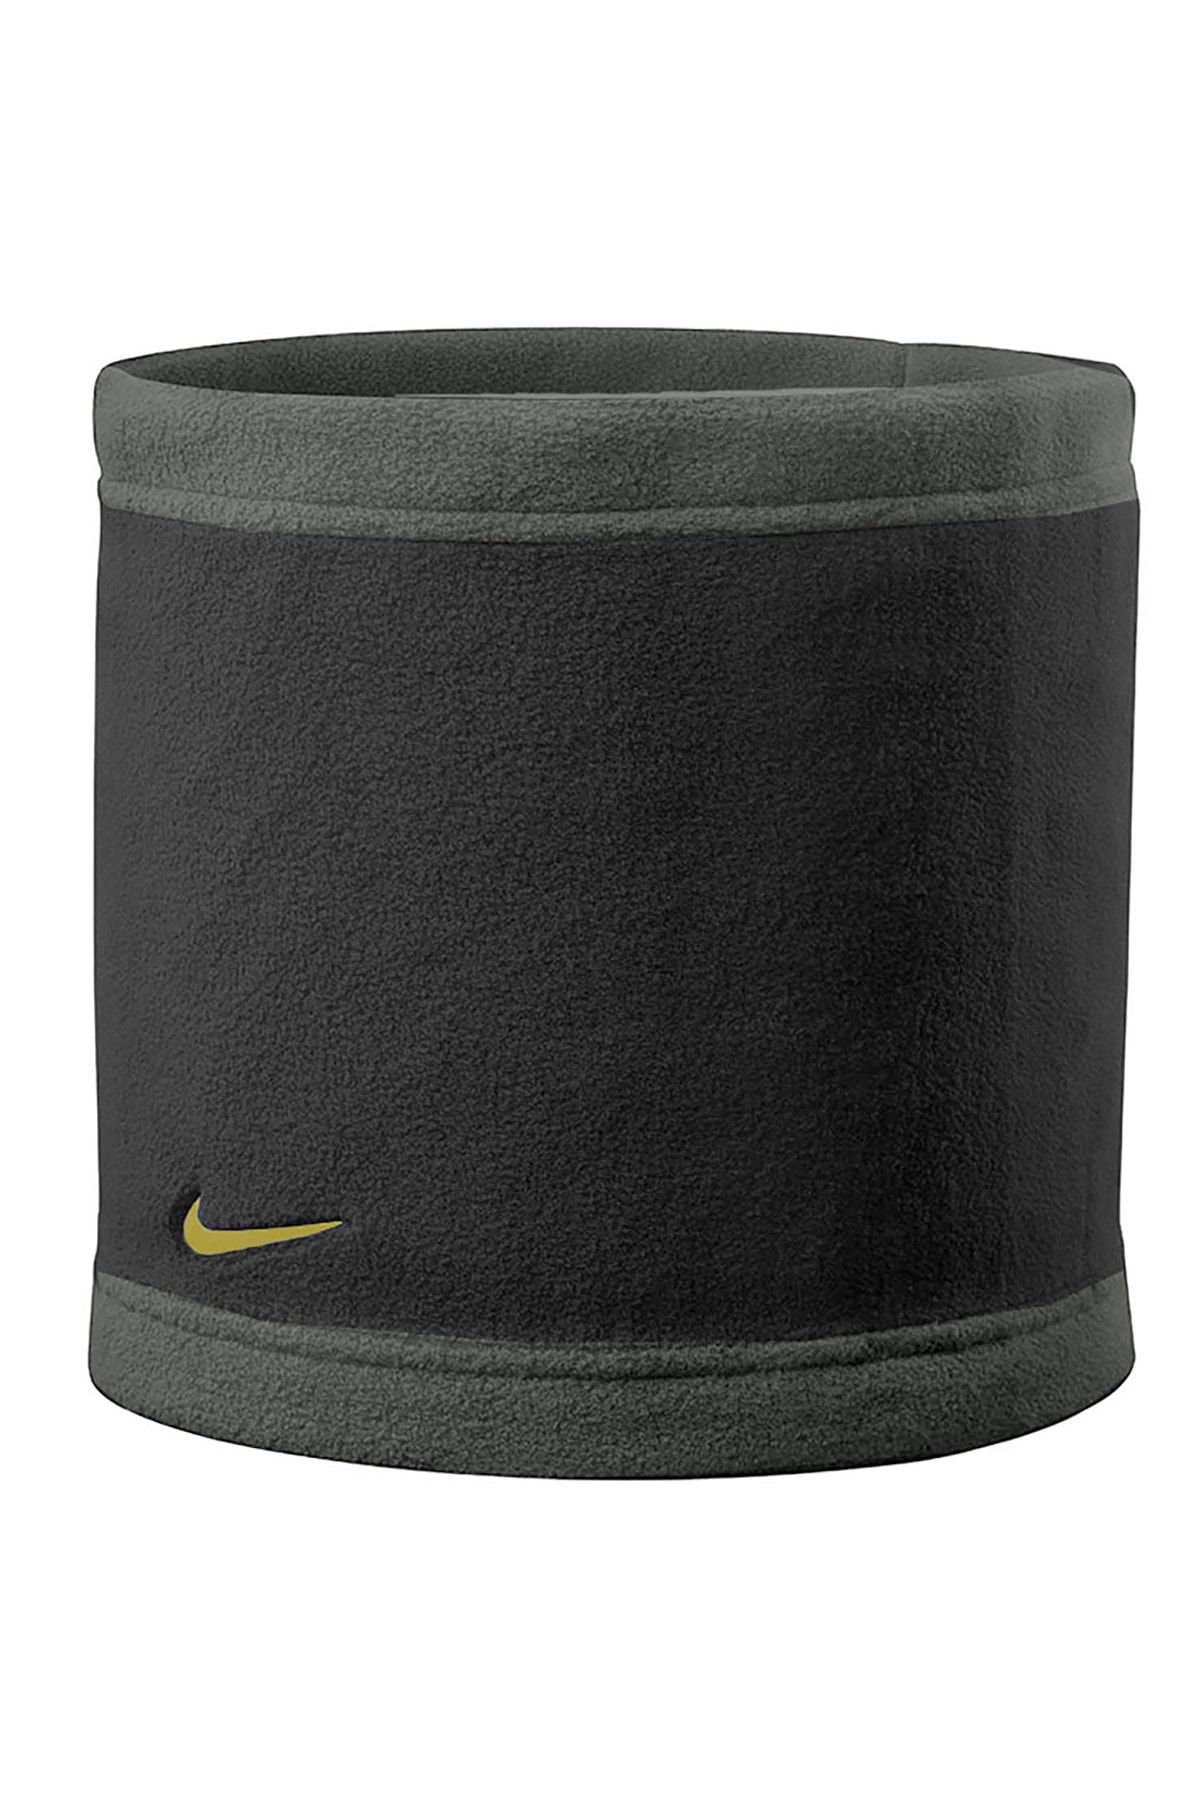 Nike Reversible Neck Warmer Erkek Gri Boyunluk N.wa.53.015.os